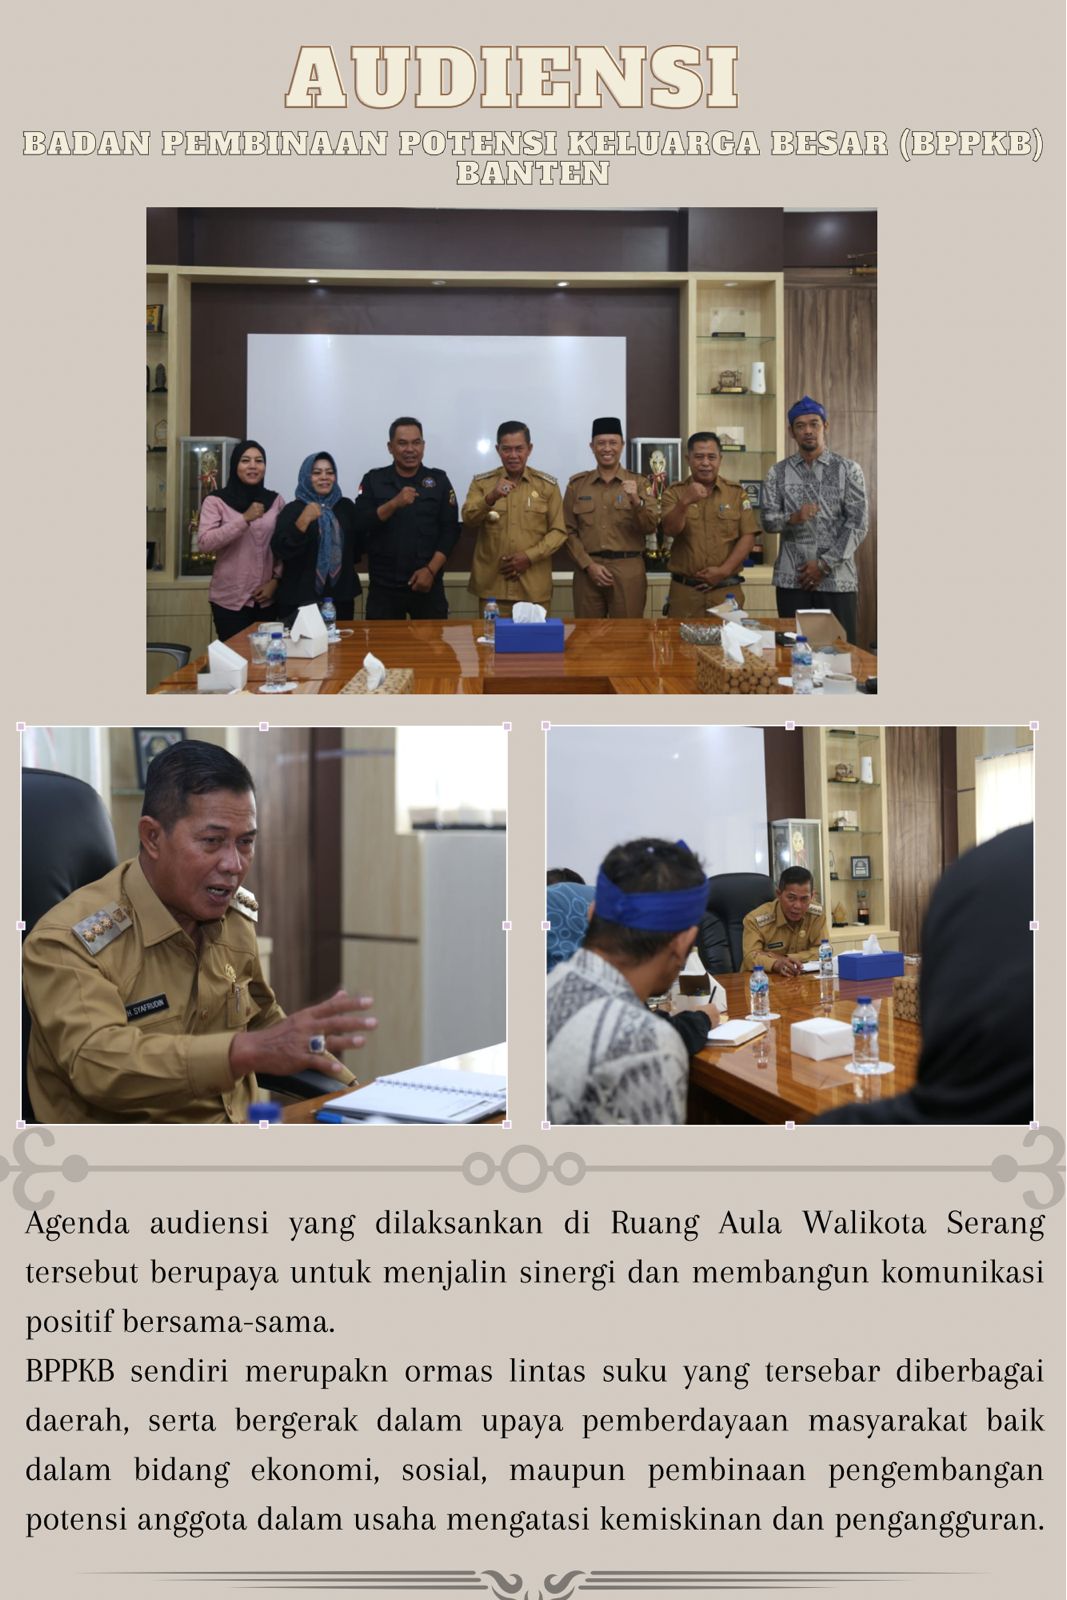 Audiensi dengan DPC Badan Pembinaan Potensi Keluarga Besar BPPKB Banten